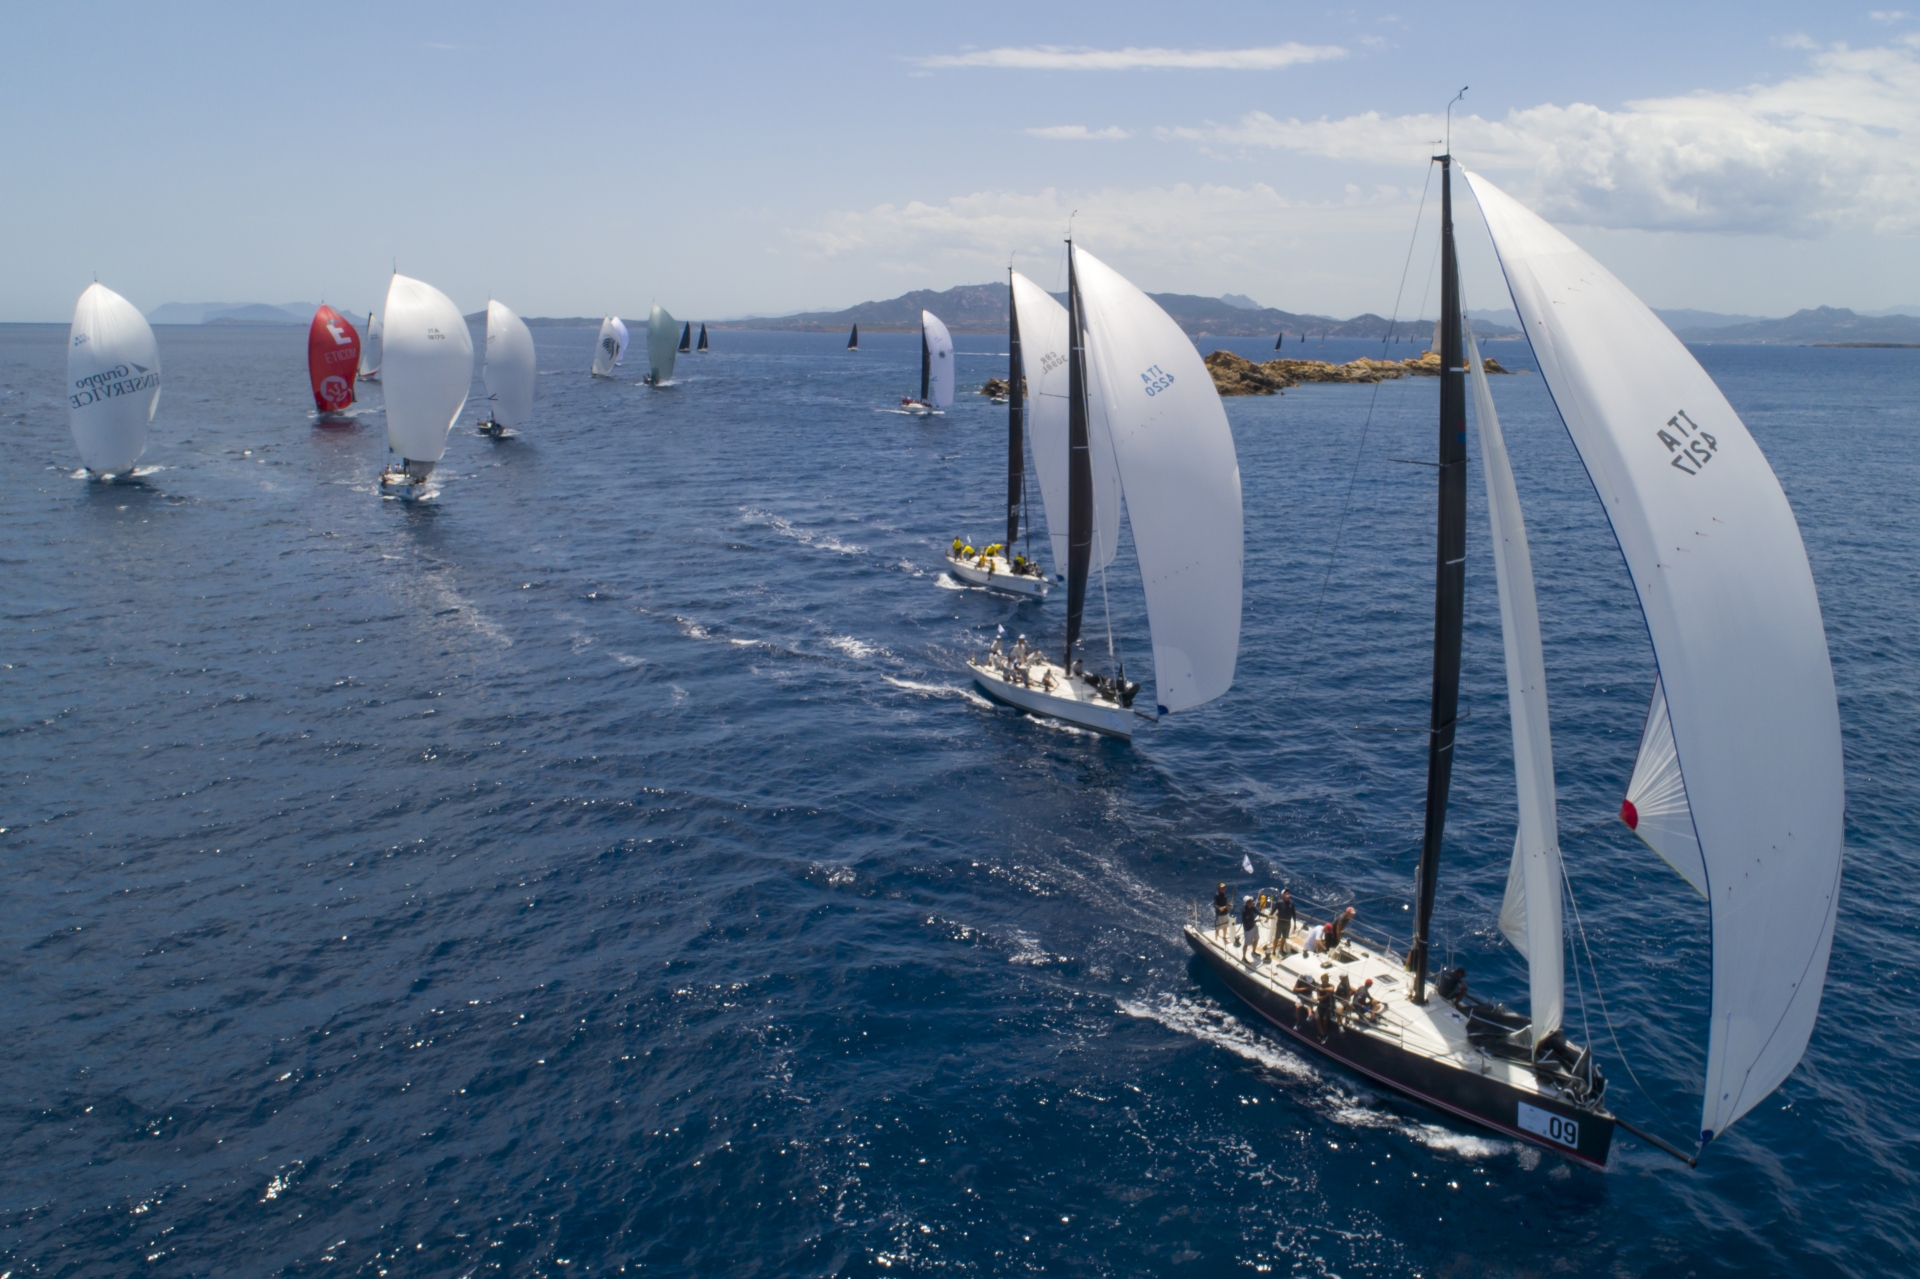 Campionato Mondiale ORC, in corso la regata lunga offshore - News - Yacht Club Costa Smeralda